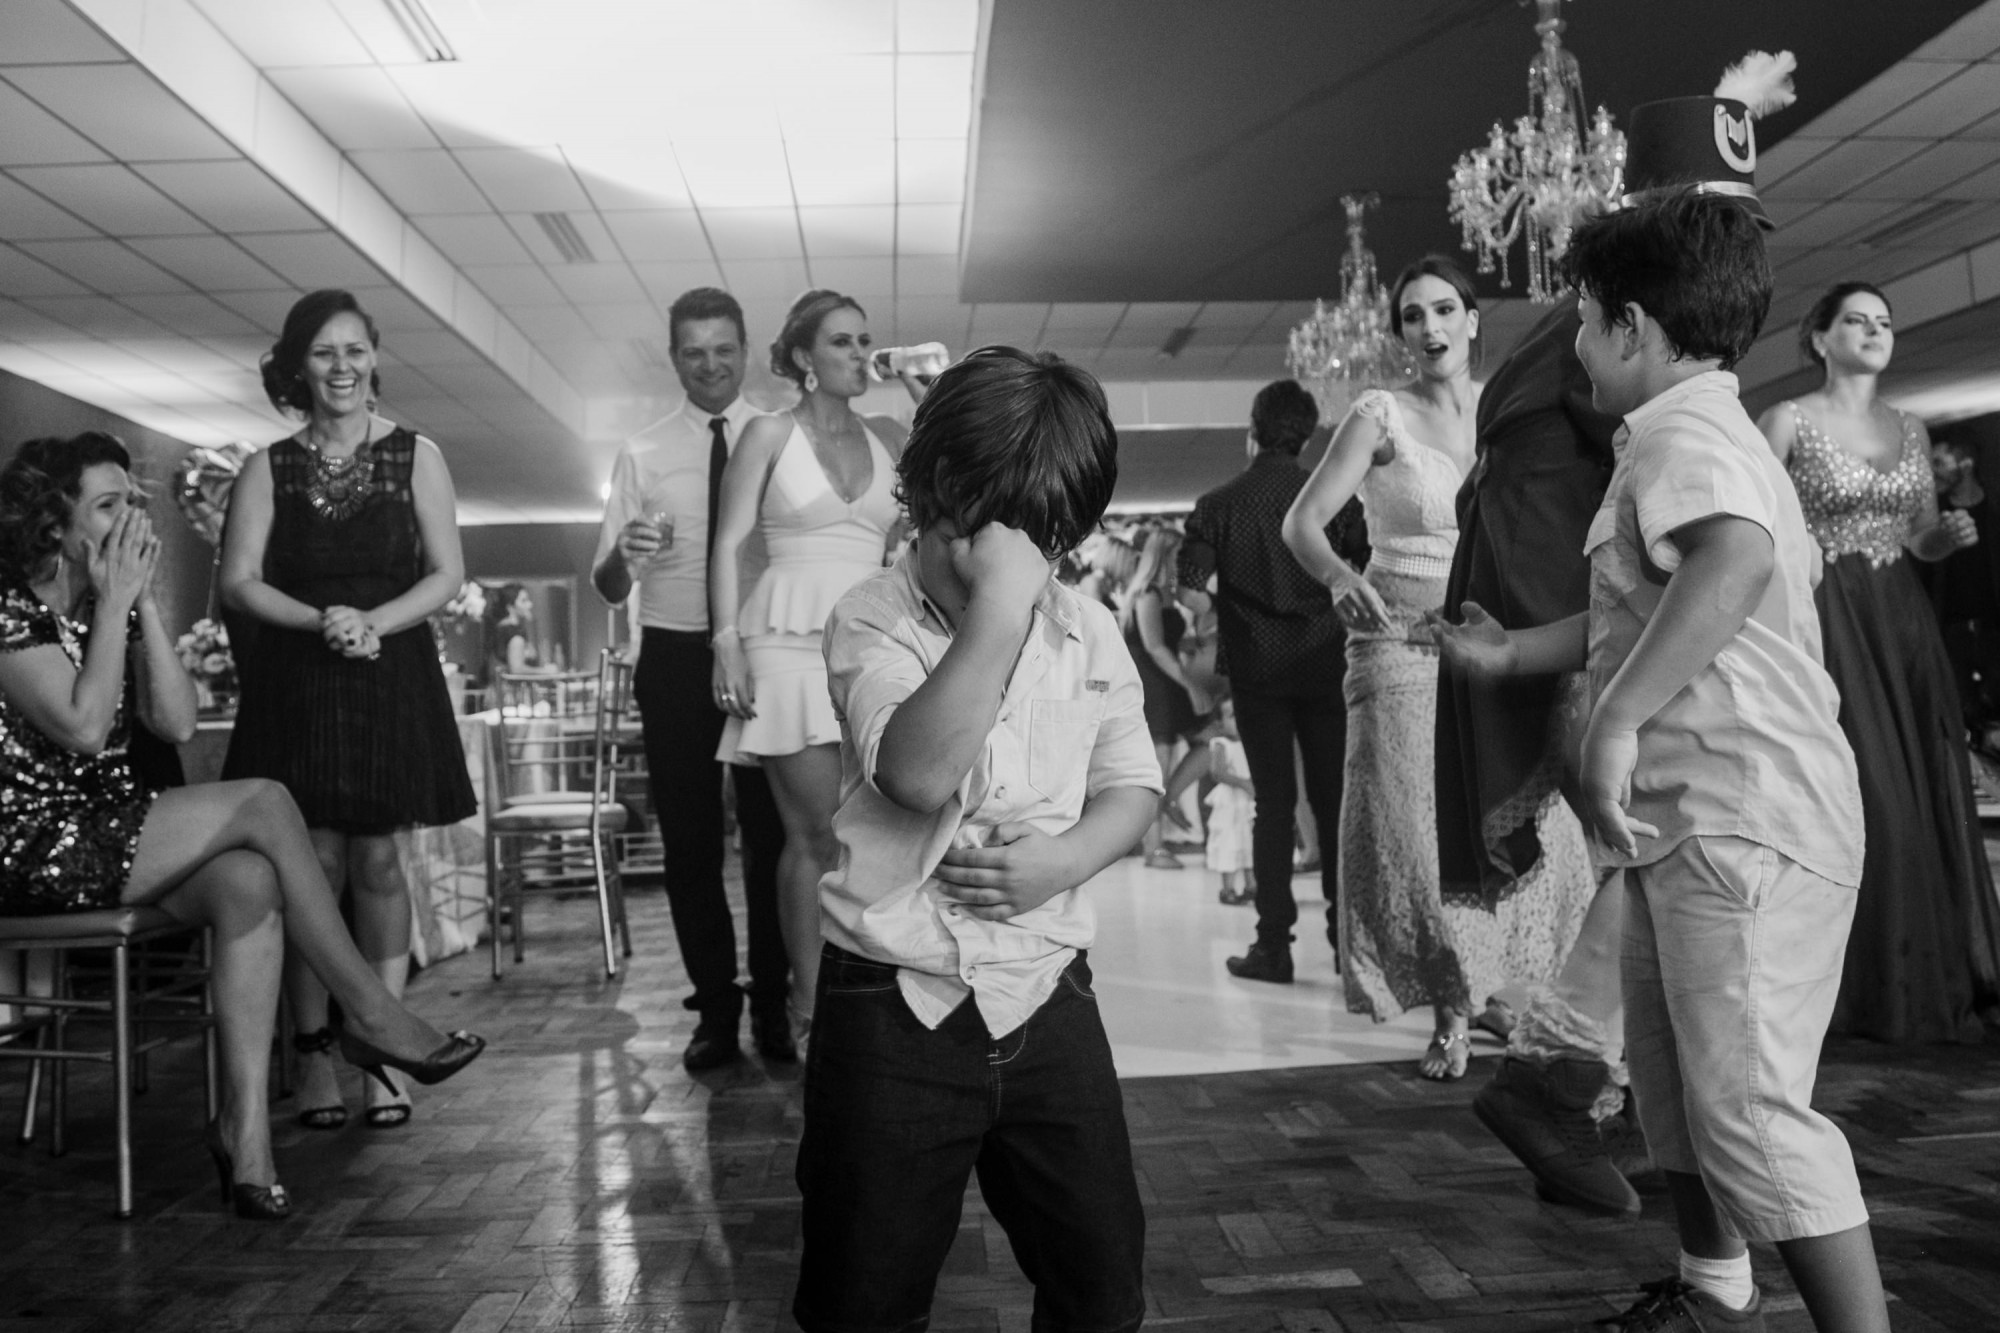 Casamento Anderson e Juliana Fioreli em Iporã Paraná - por Lorran Souza e Léia Sotile - Fotografos de casamentos - JA-4263